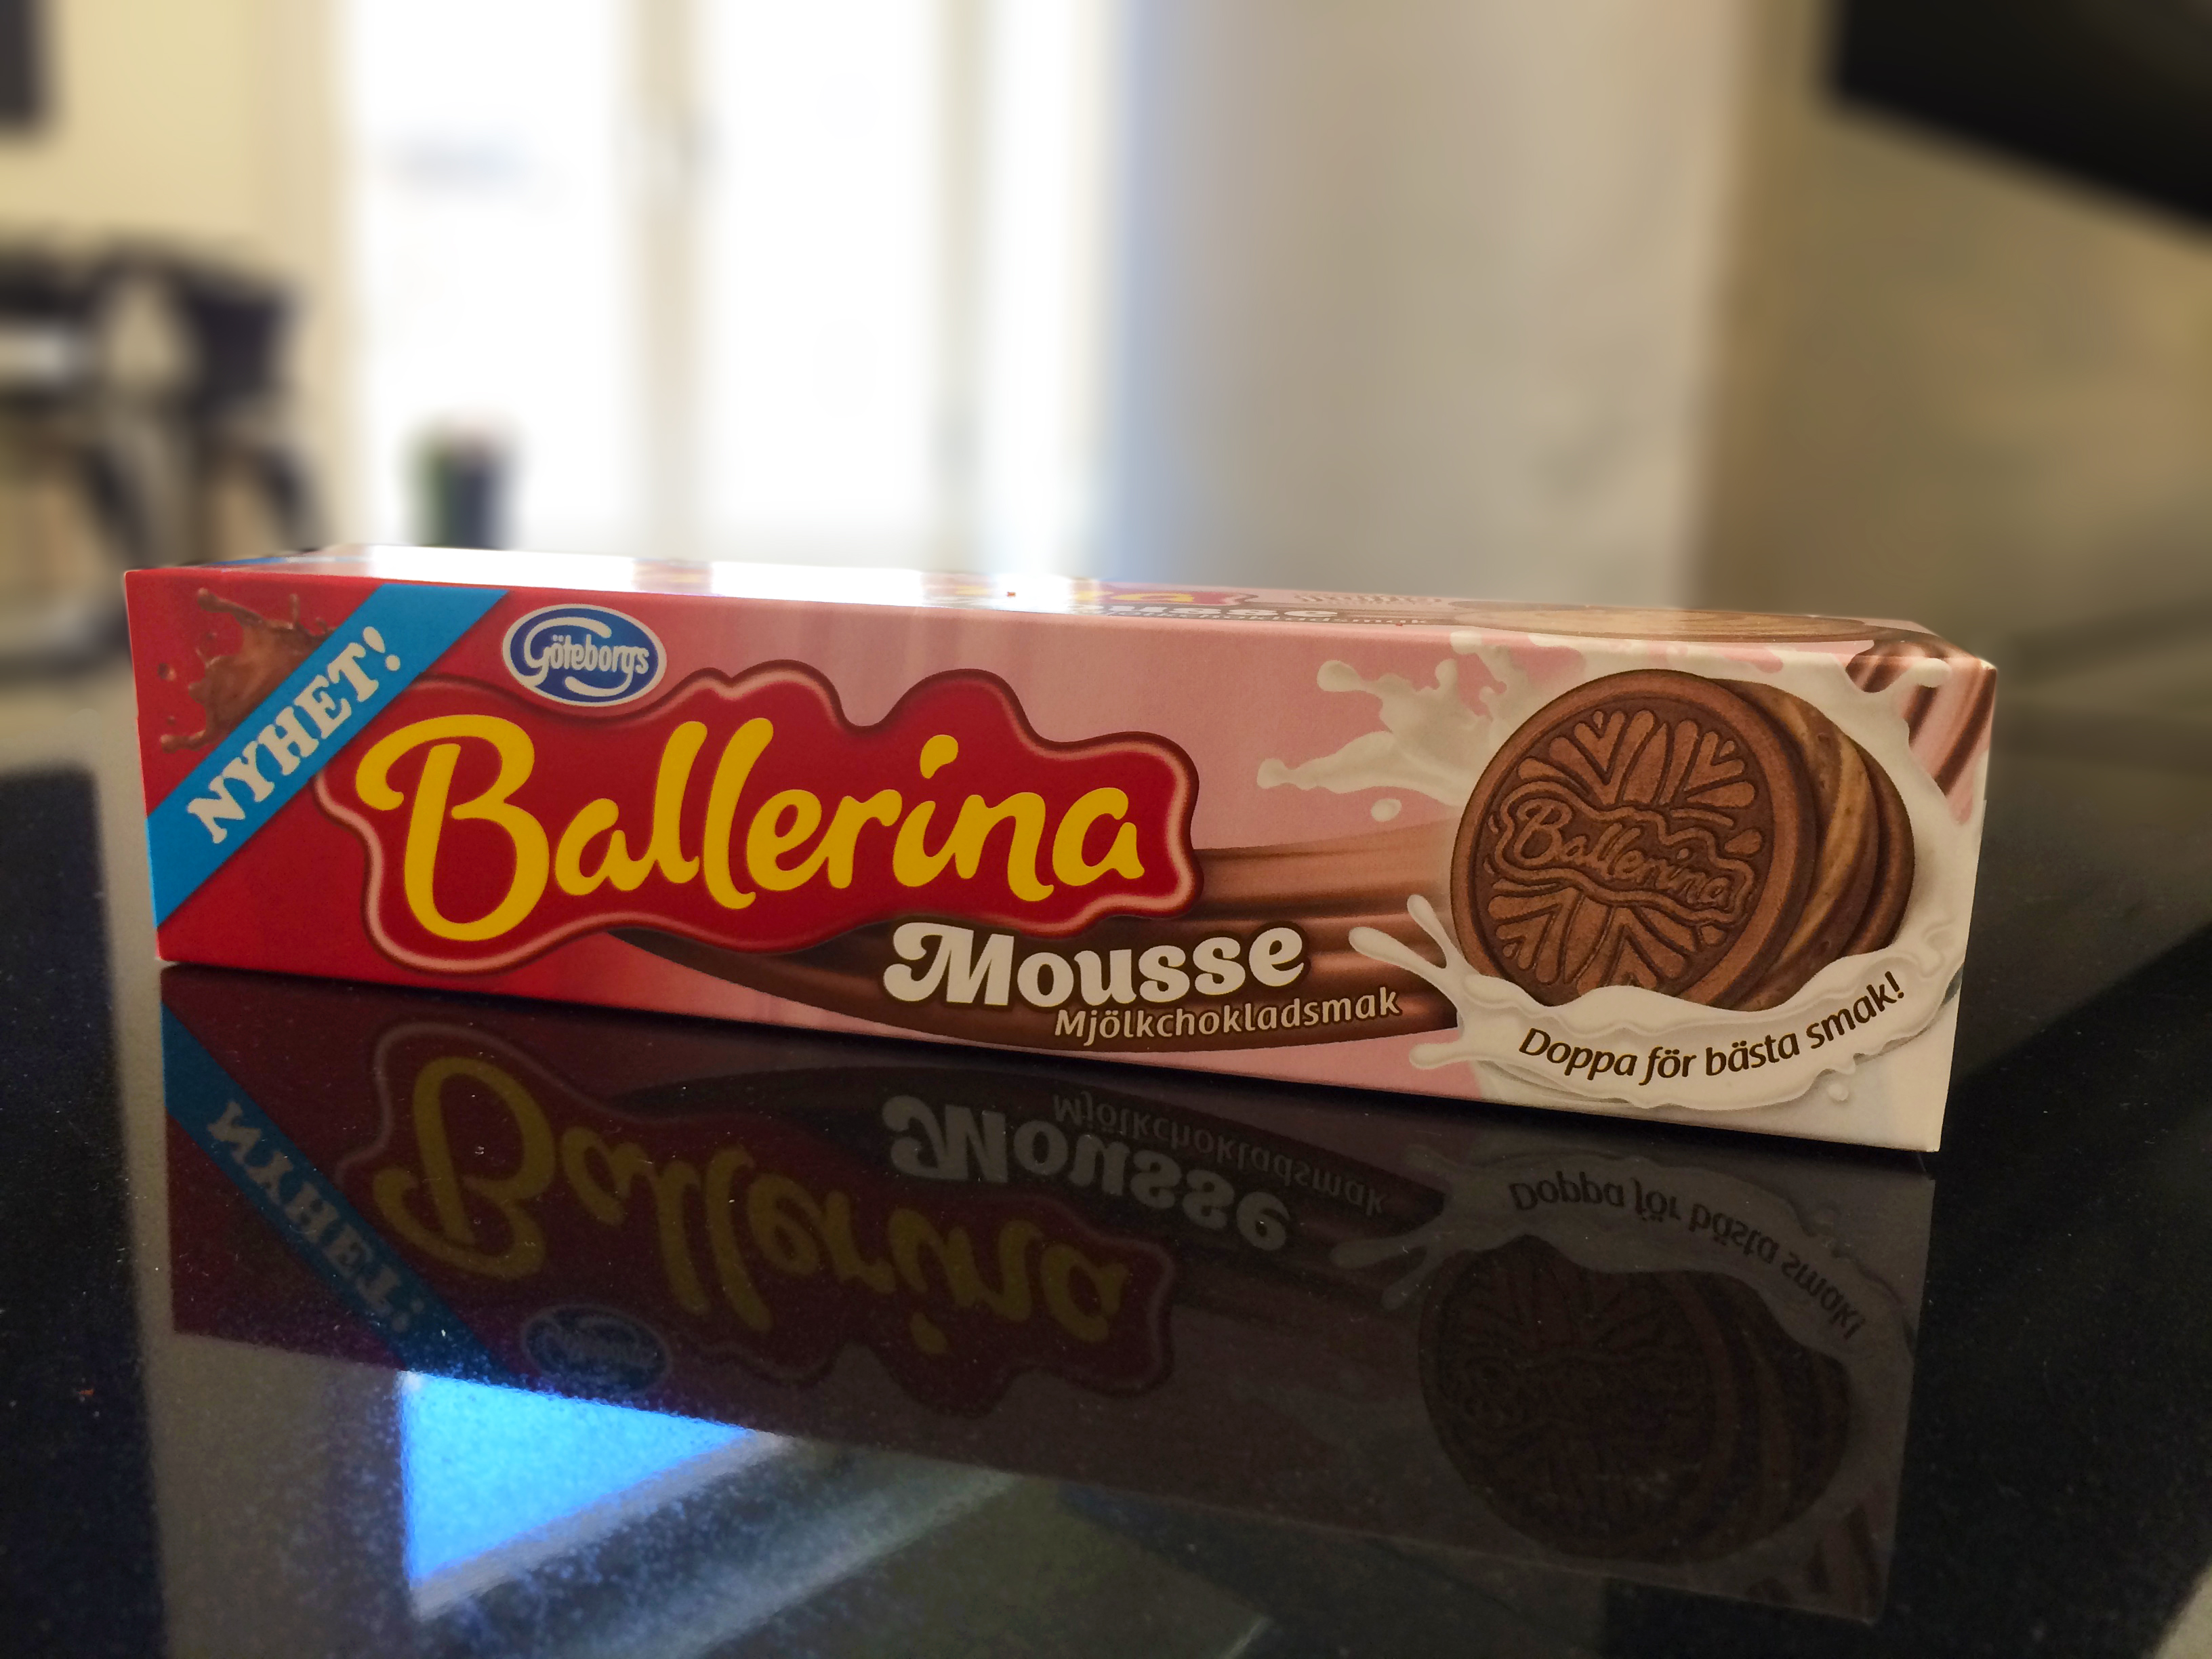 Ballerina Mousse Mjölkchokladsmak